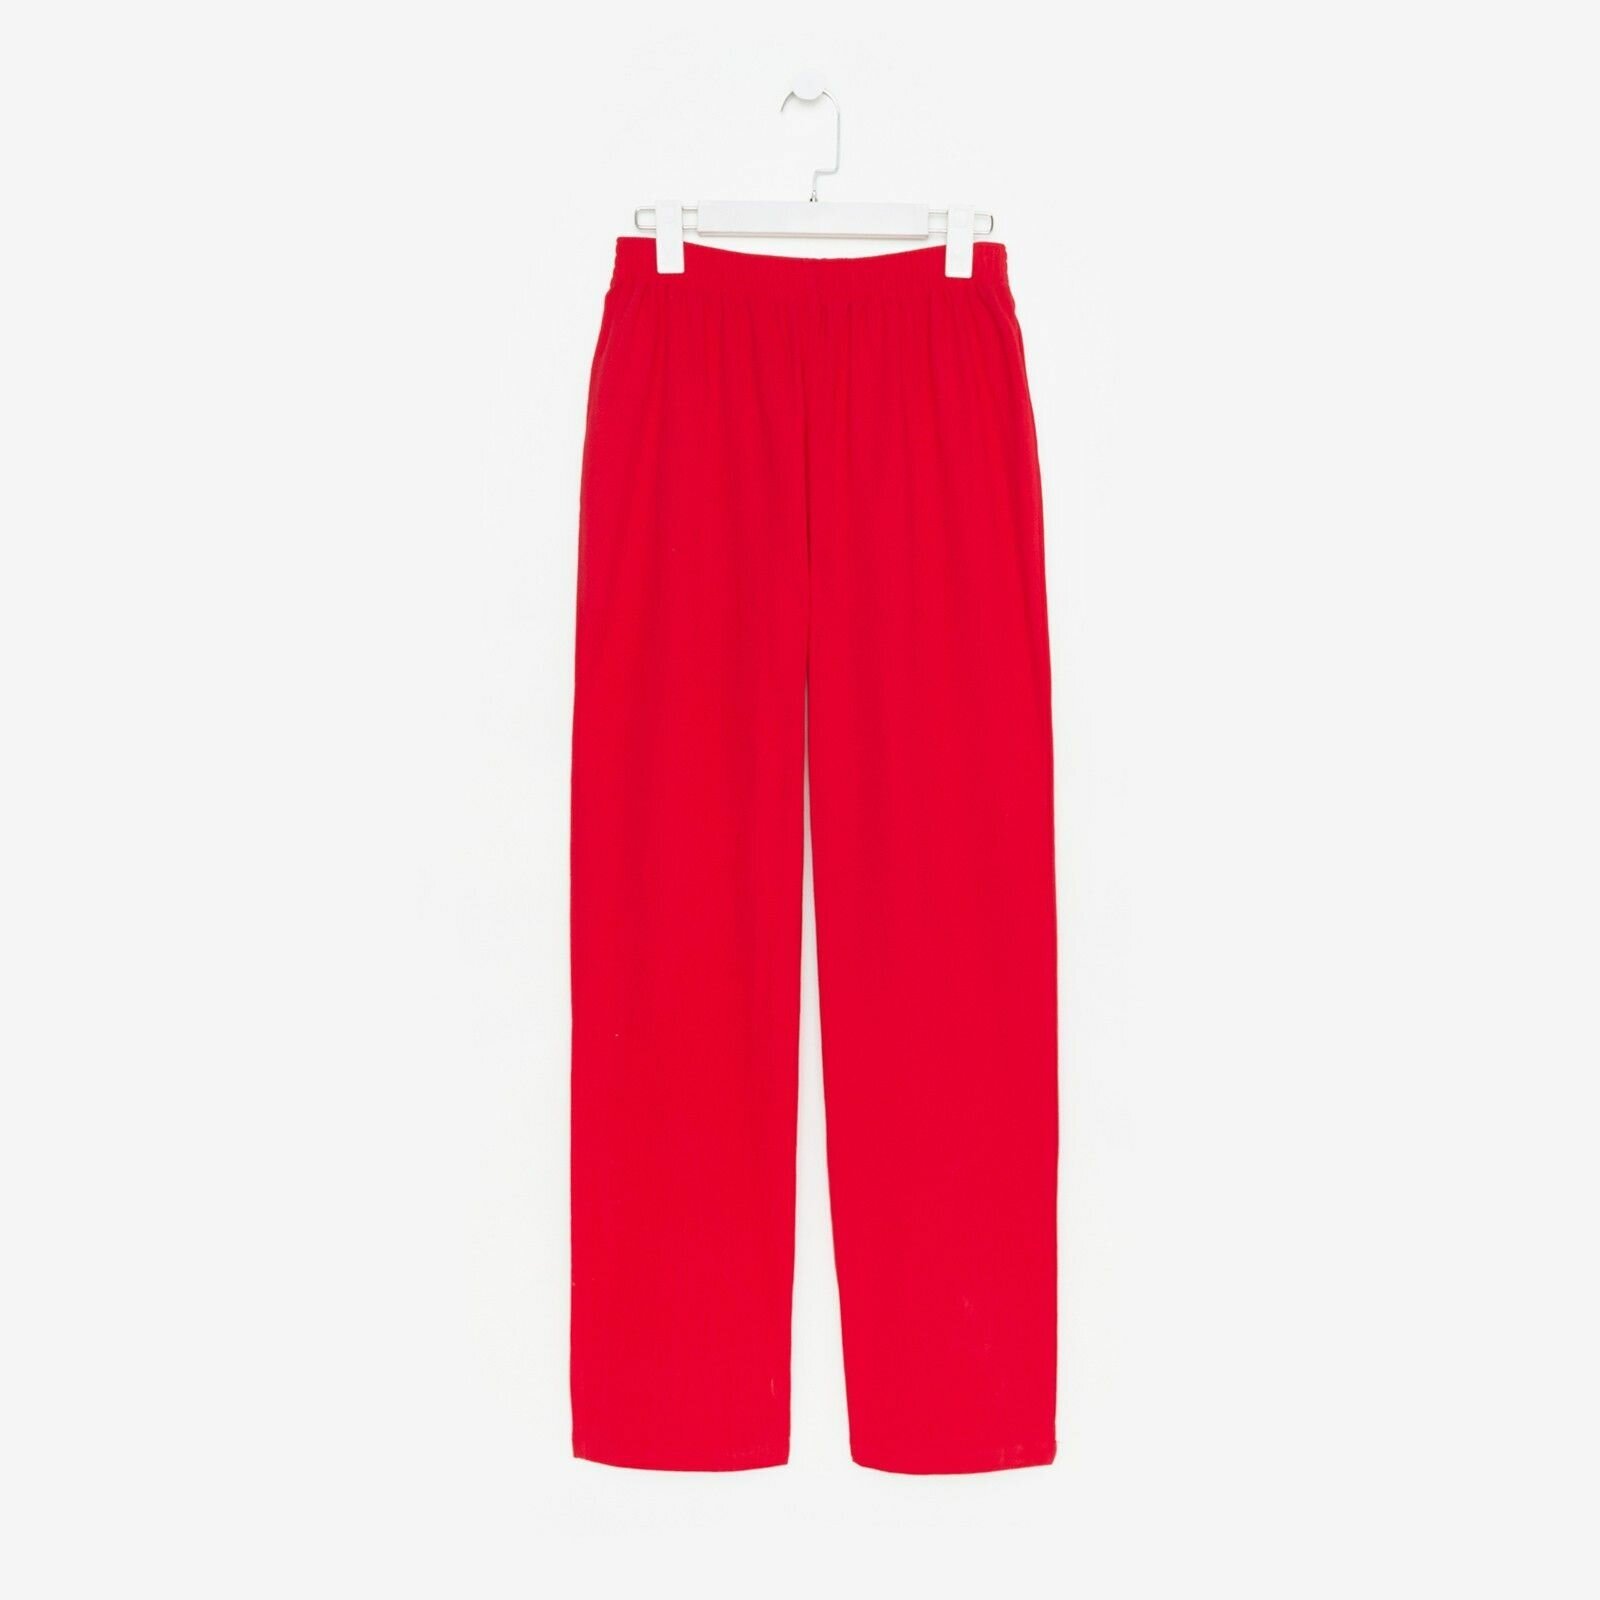 Пижама Kaftan, рубашка, брюки, длинный рукав, размер 52-54, красный - фотография № 5